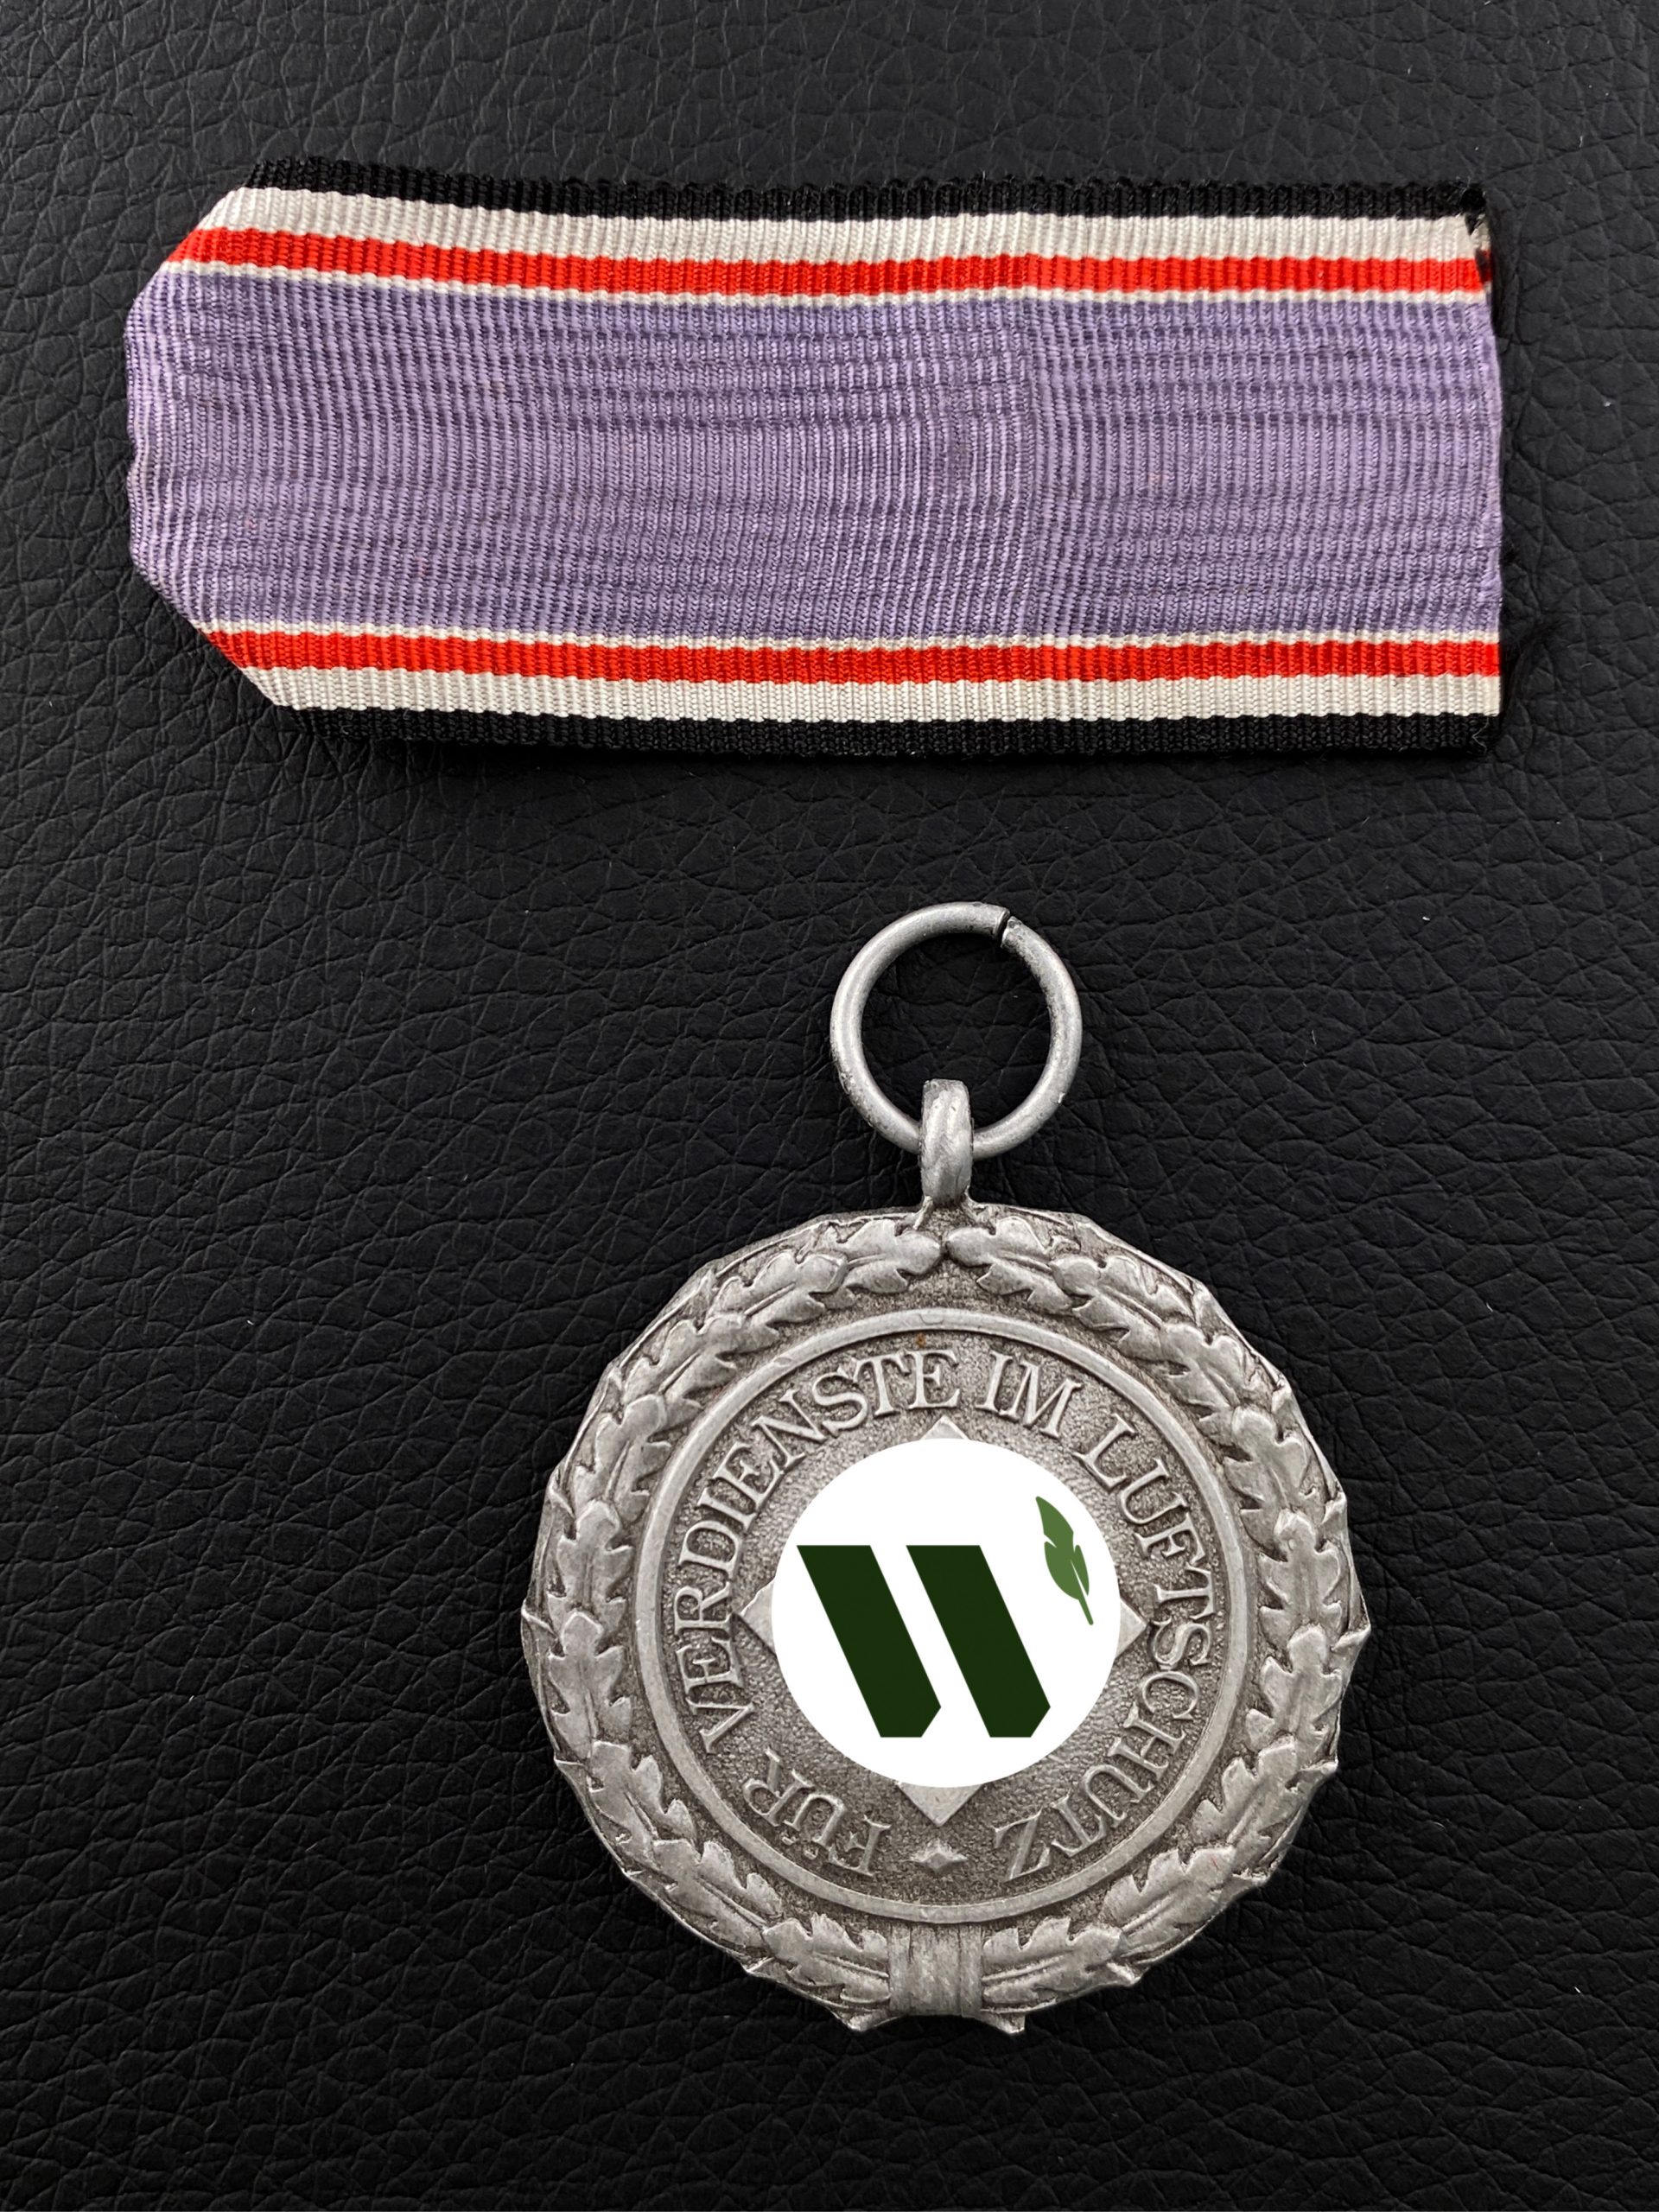 Медаль «За службу по охране воздушного пространства» II класса. (FUR VERDIENSTE IM LUFTSCHUTZ).